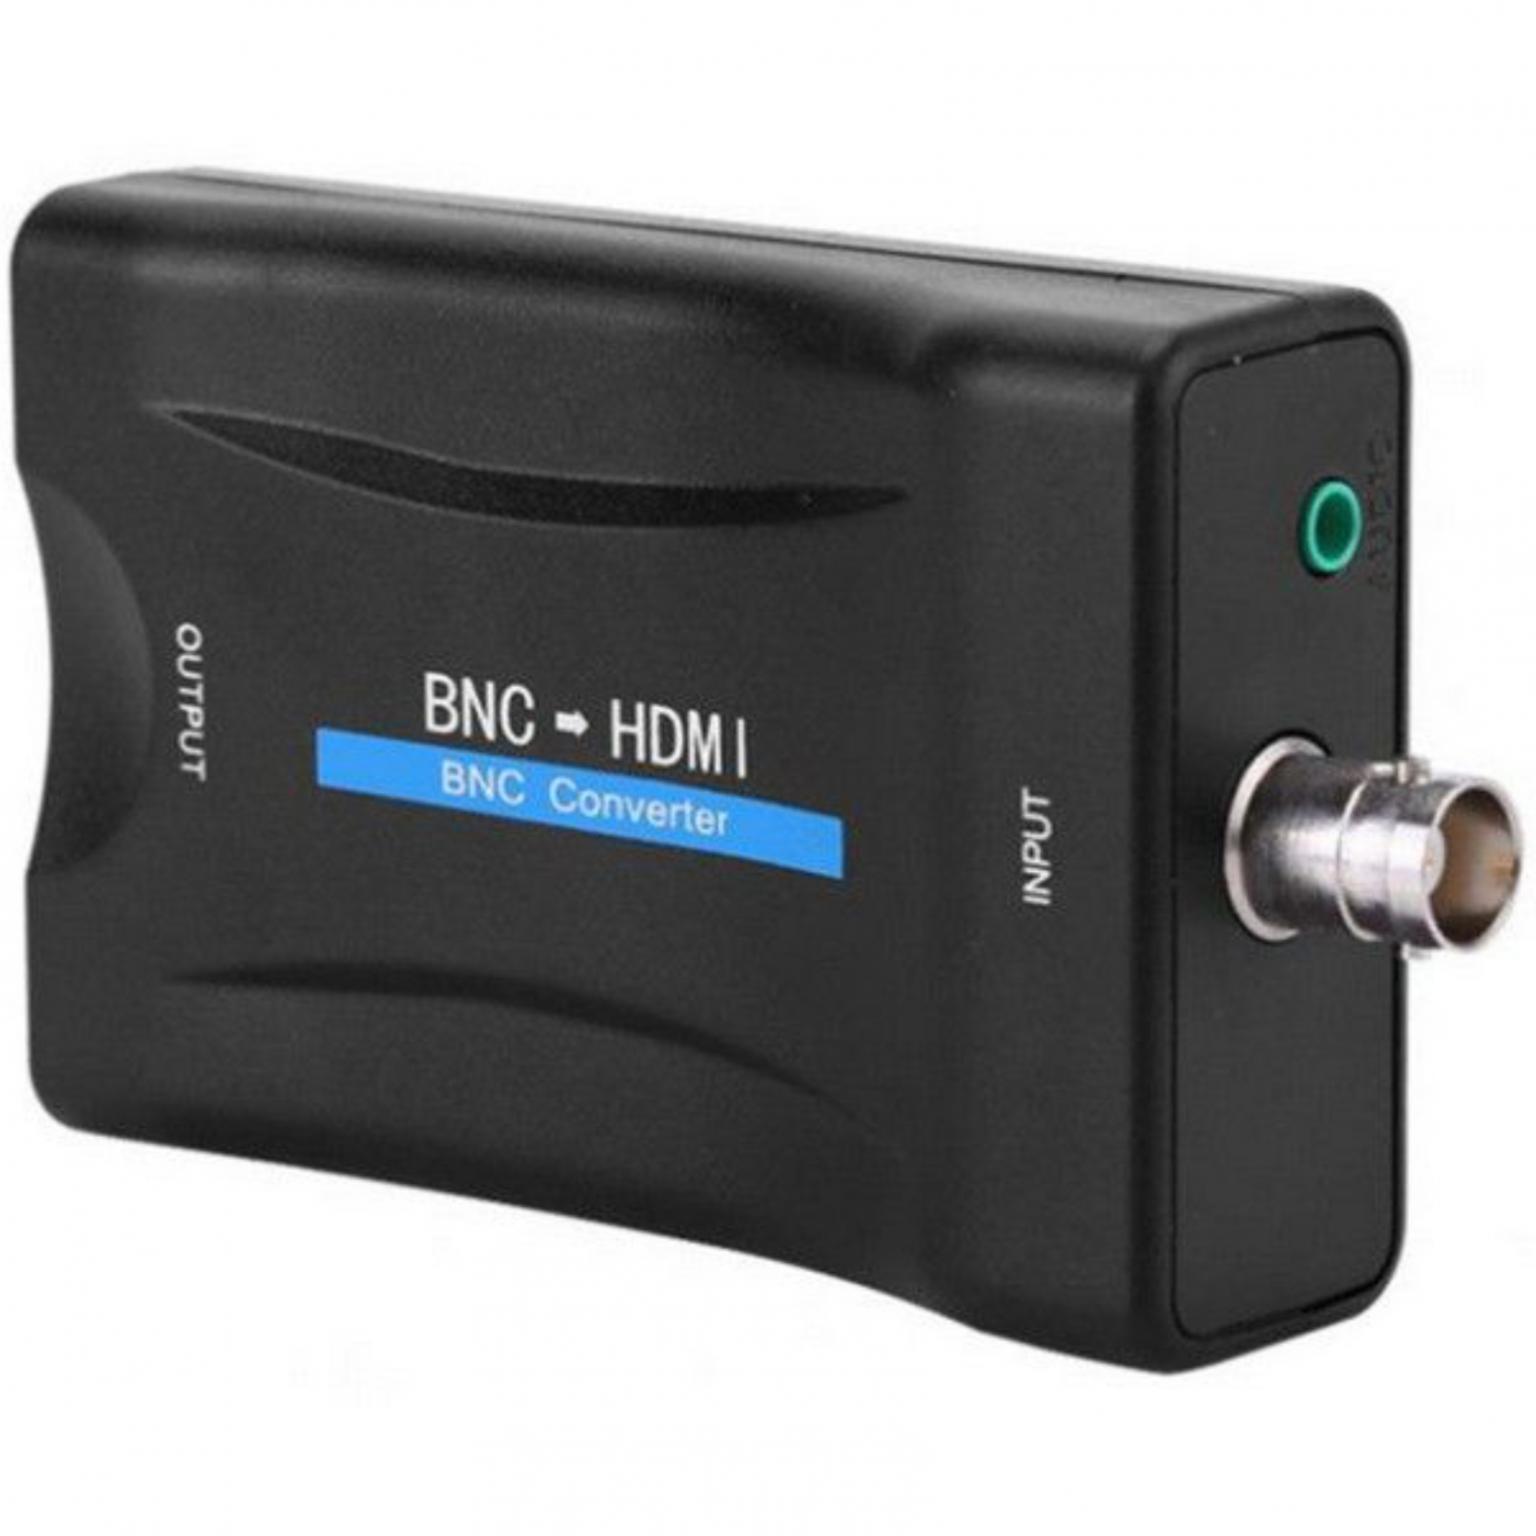 Uitvoeren geest lokaal BNC naar HDMI omvormer - BNC naar HDMI omvormer, Aansluiting 1: BNC (BNC)  Female, Aansluiting 2: HDMI Female, Maximale resolutie: 1080p.